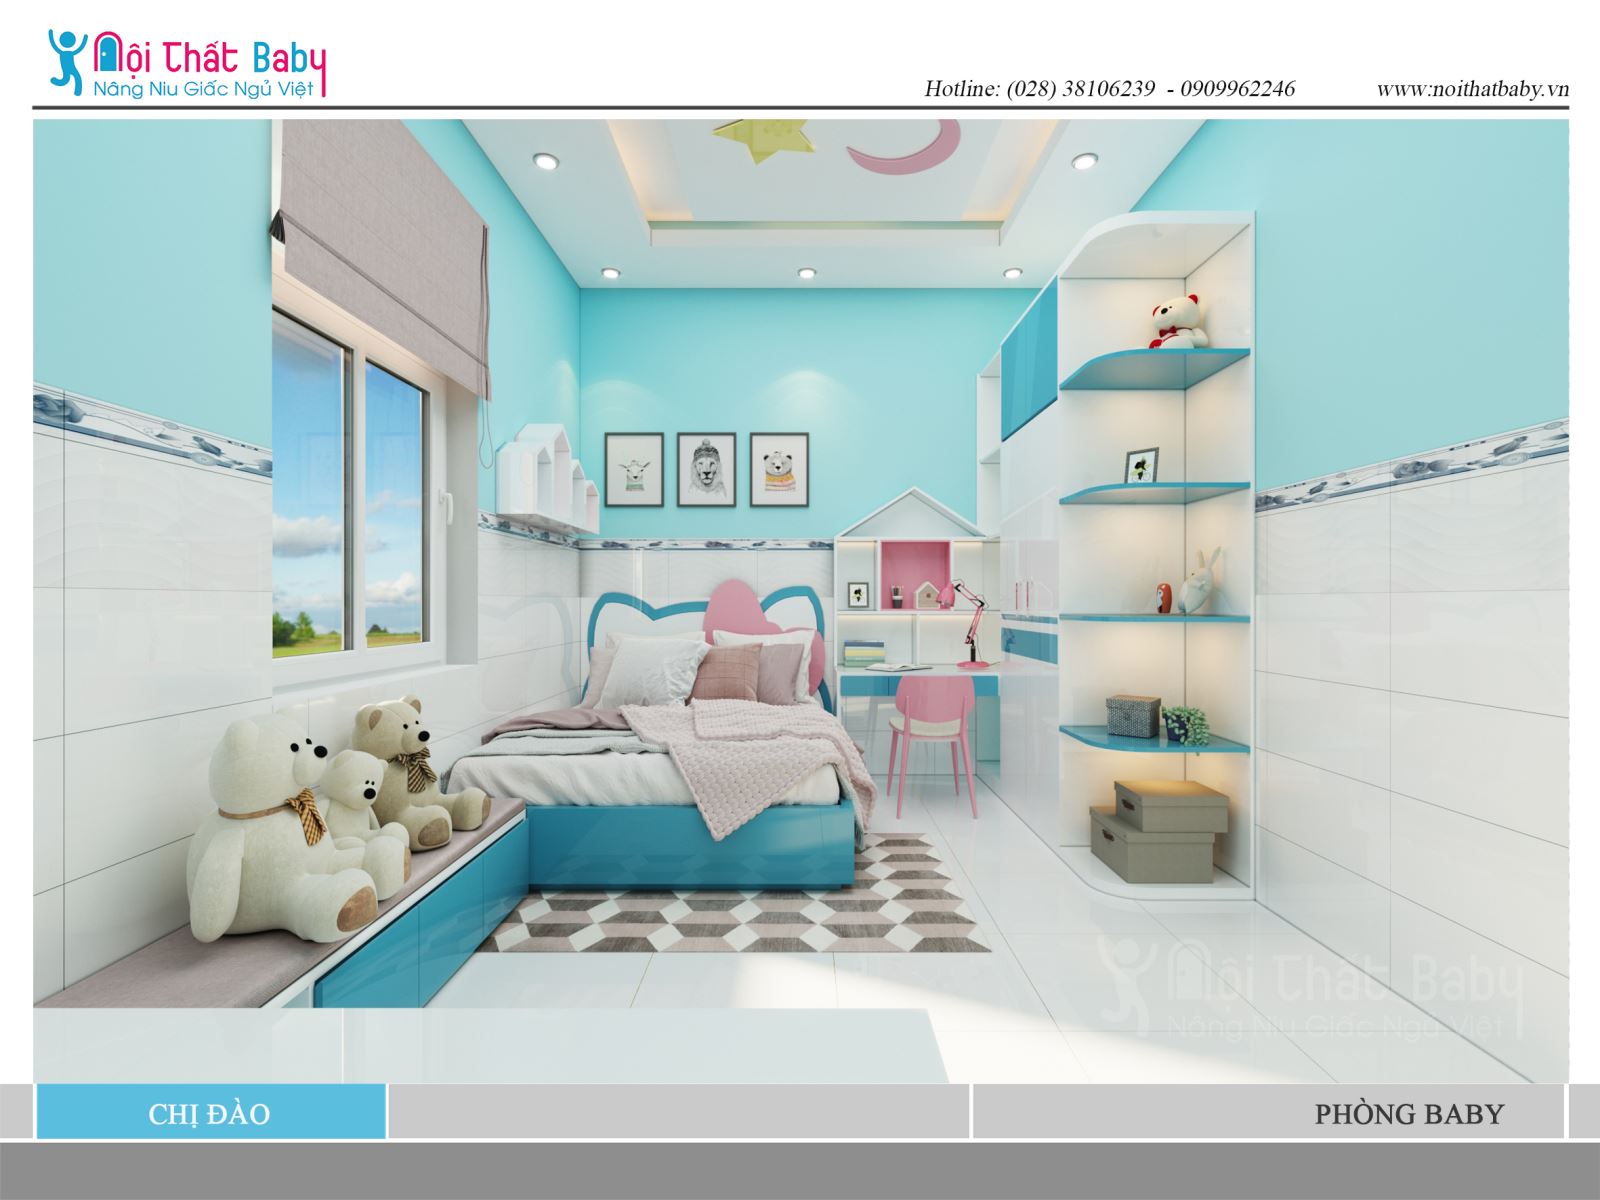 Mẫu thiết kế phòng ngủ bé gái đẹp với màu xanh nhà chị Đào